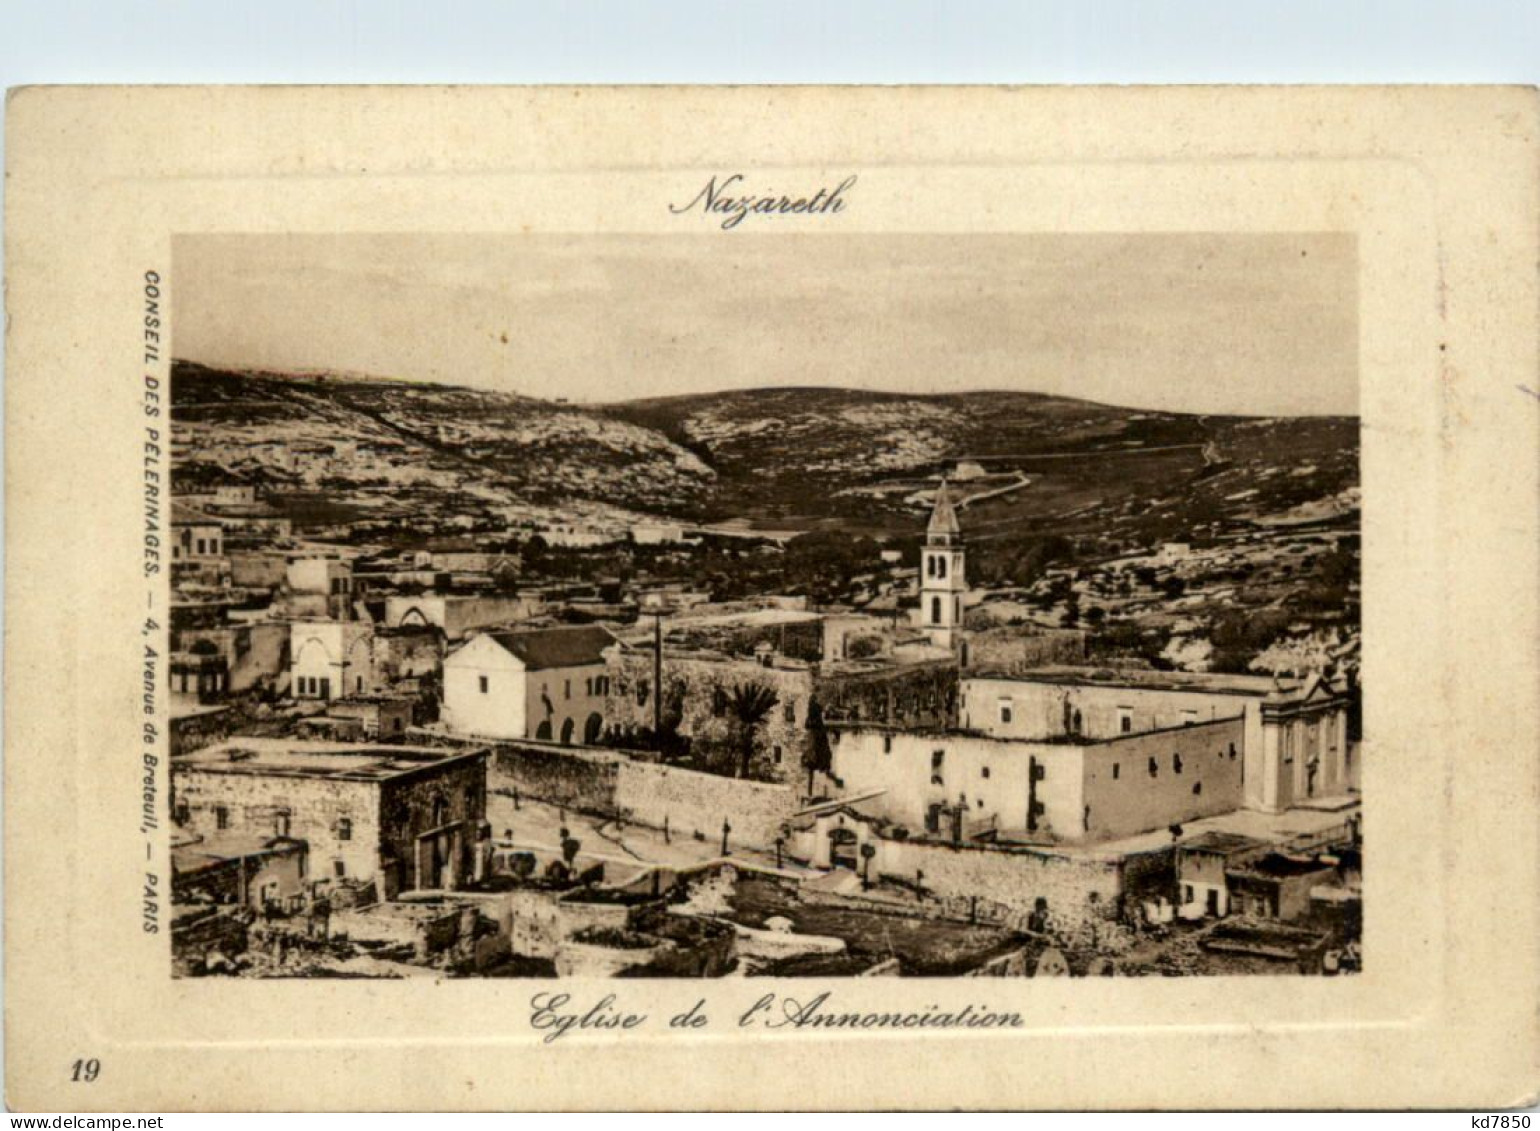 Nazareth - Eglise De L Annoncialion - Palestina